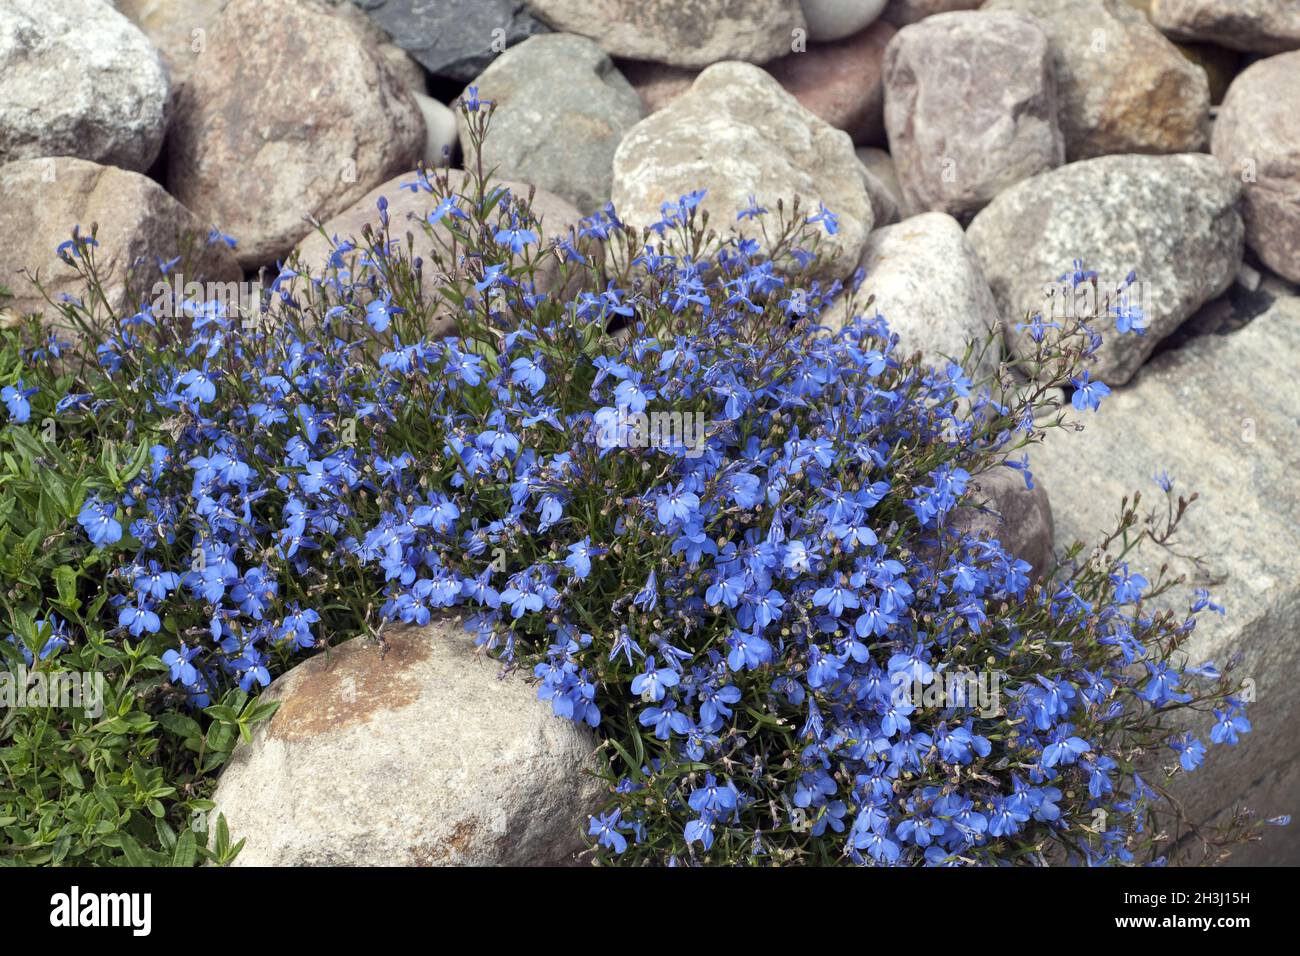 Lobelia, erinus, blue, lobelia, Stock Photo